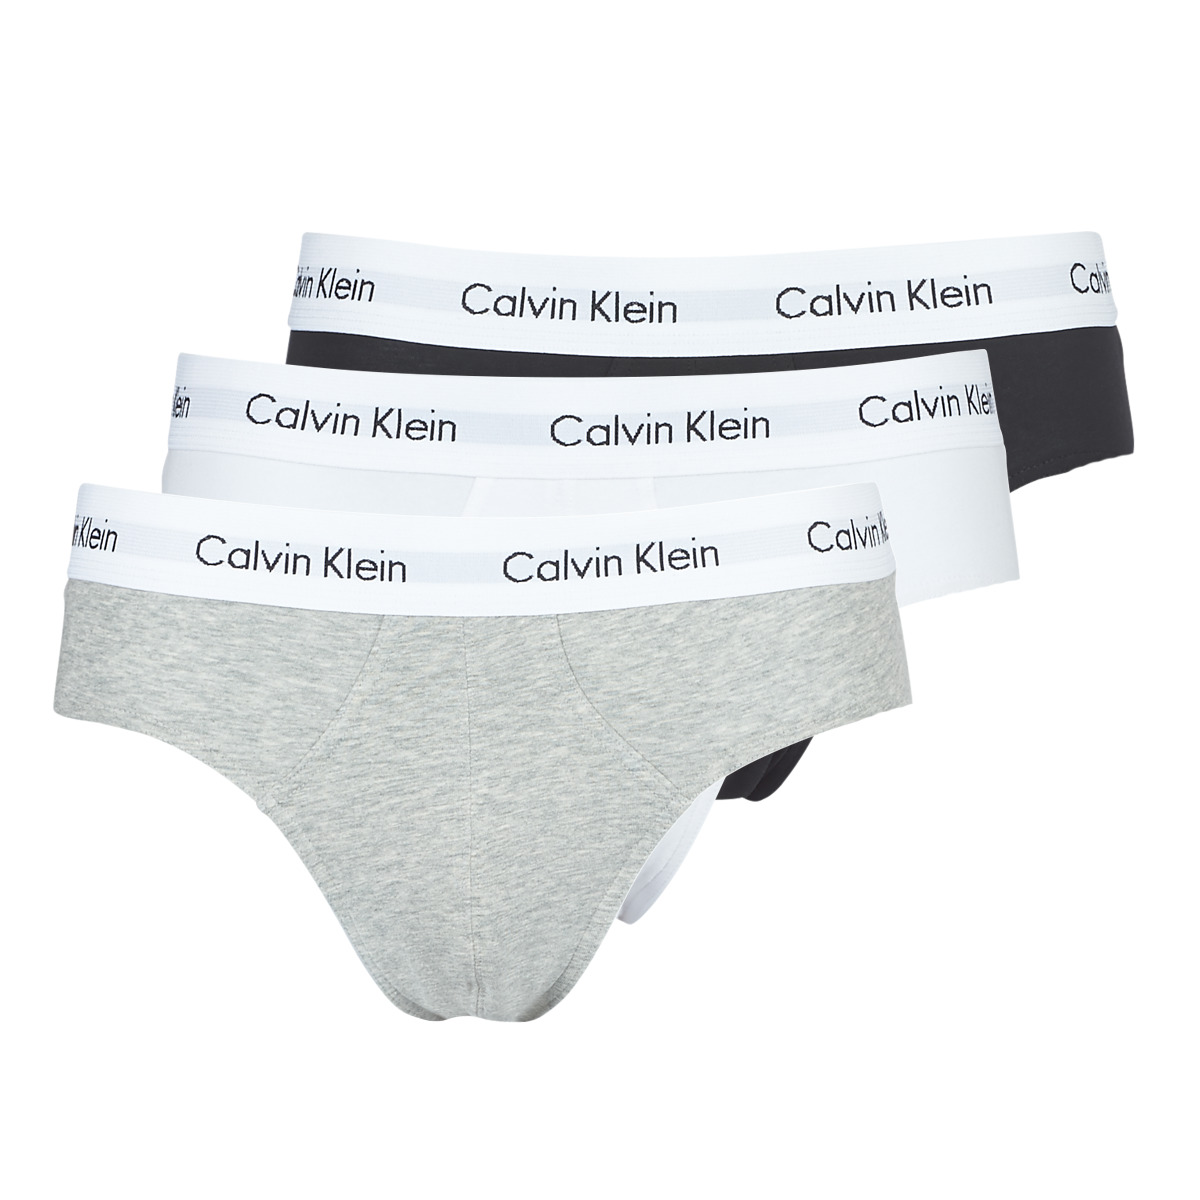 Calvin Klein Underwear Mutande da uomo online